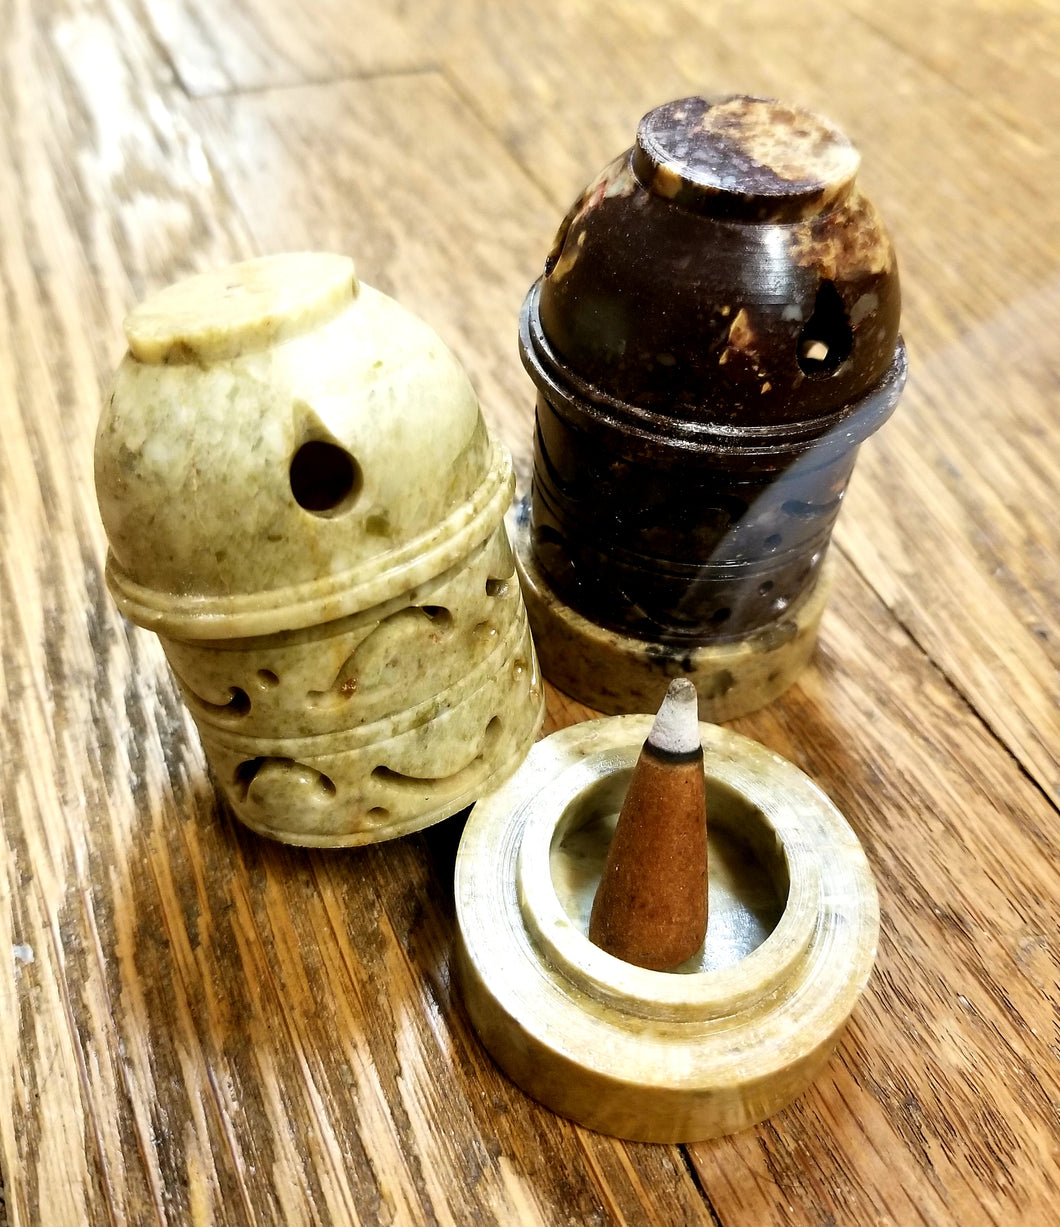 Soapstone incense cone burners